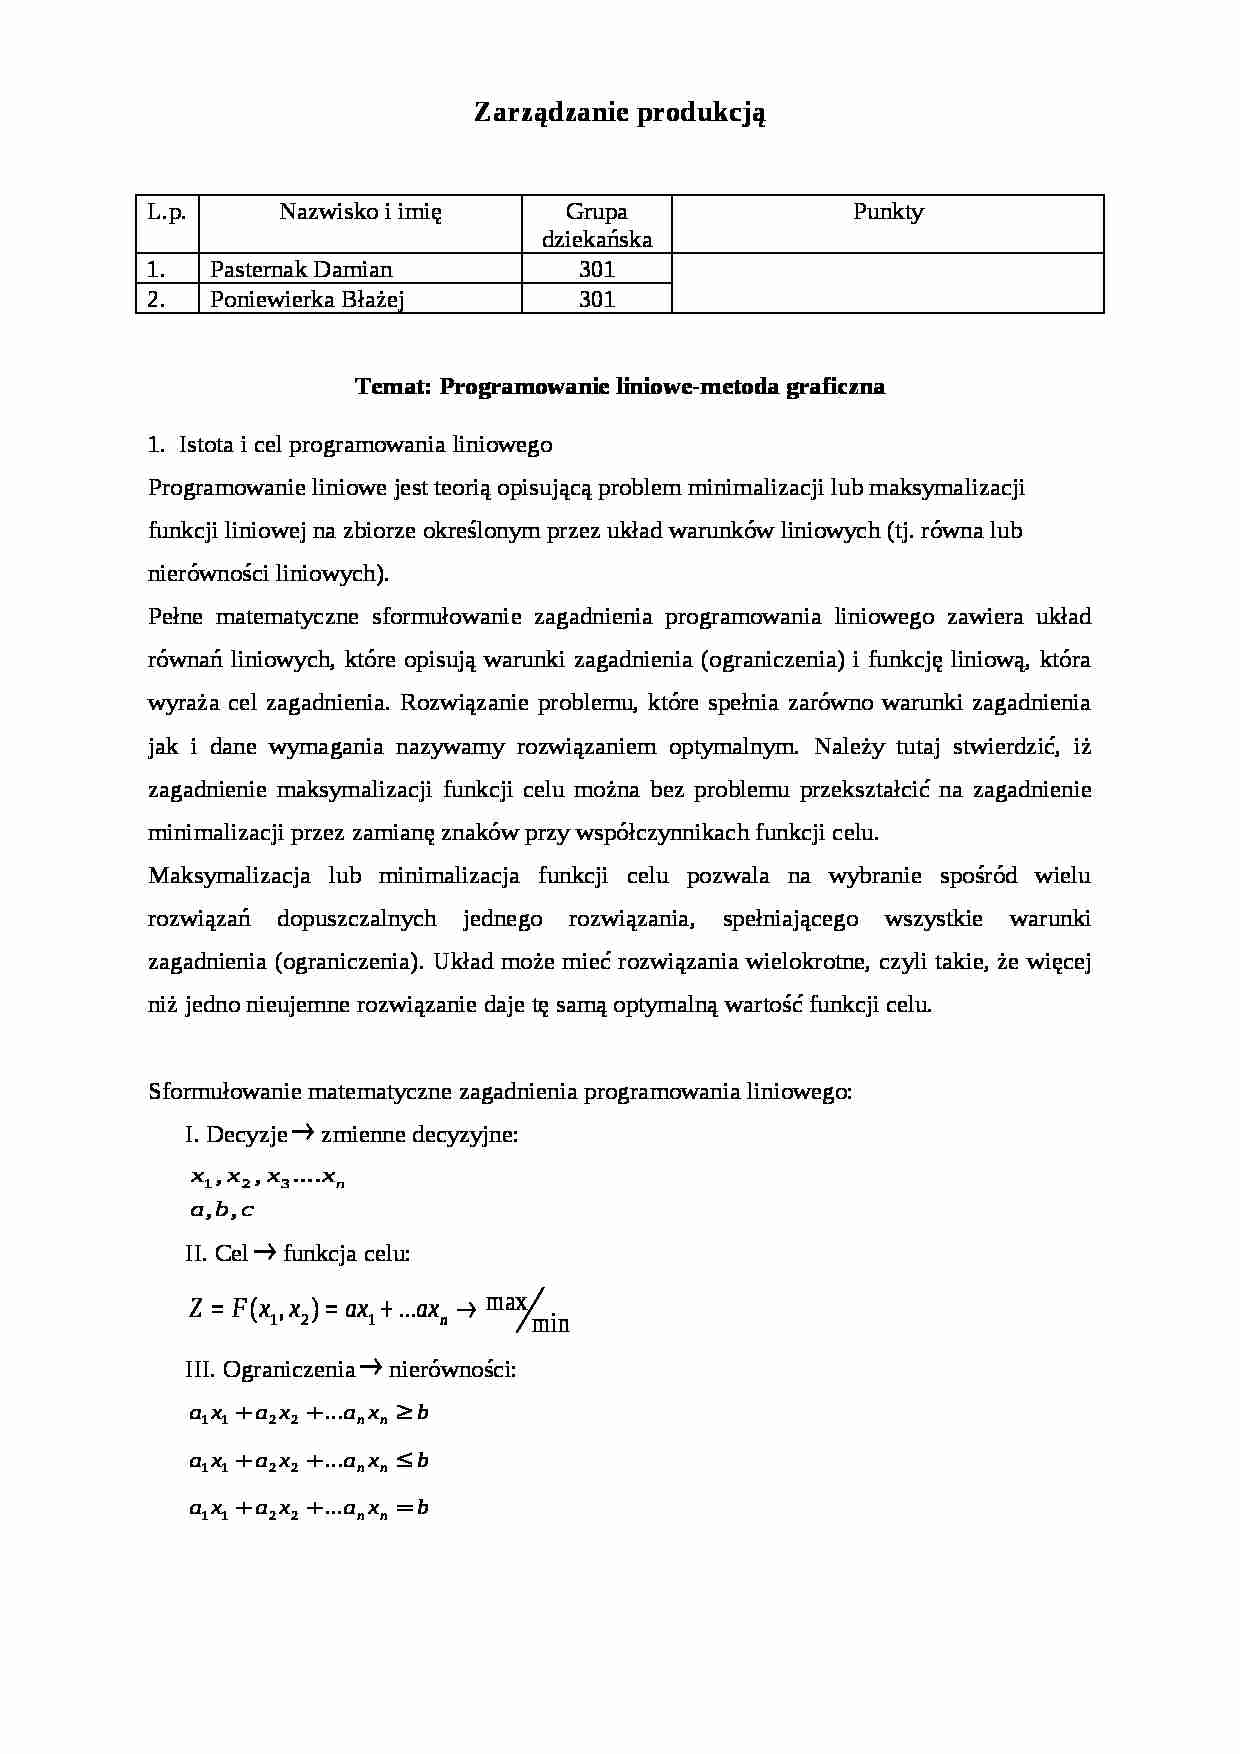 Programowanie liniowe produkcji-metoda graficzna-praca zaliczeniowa na ćwiczenia - strona 1